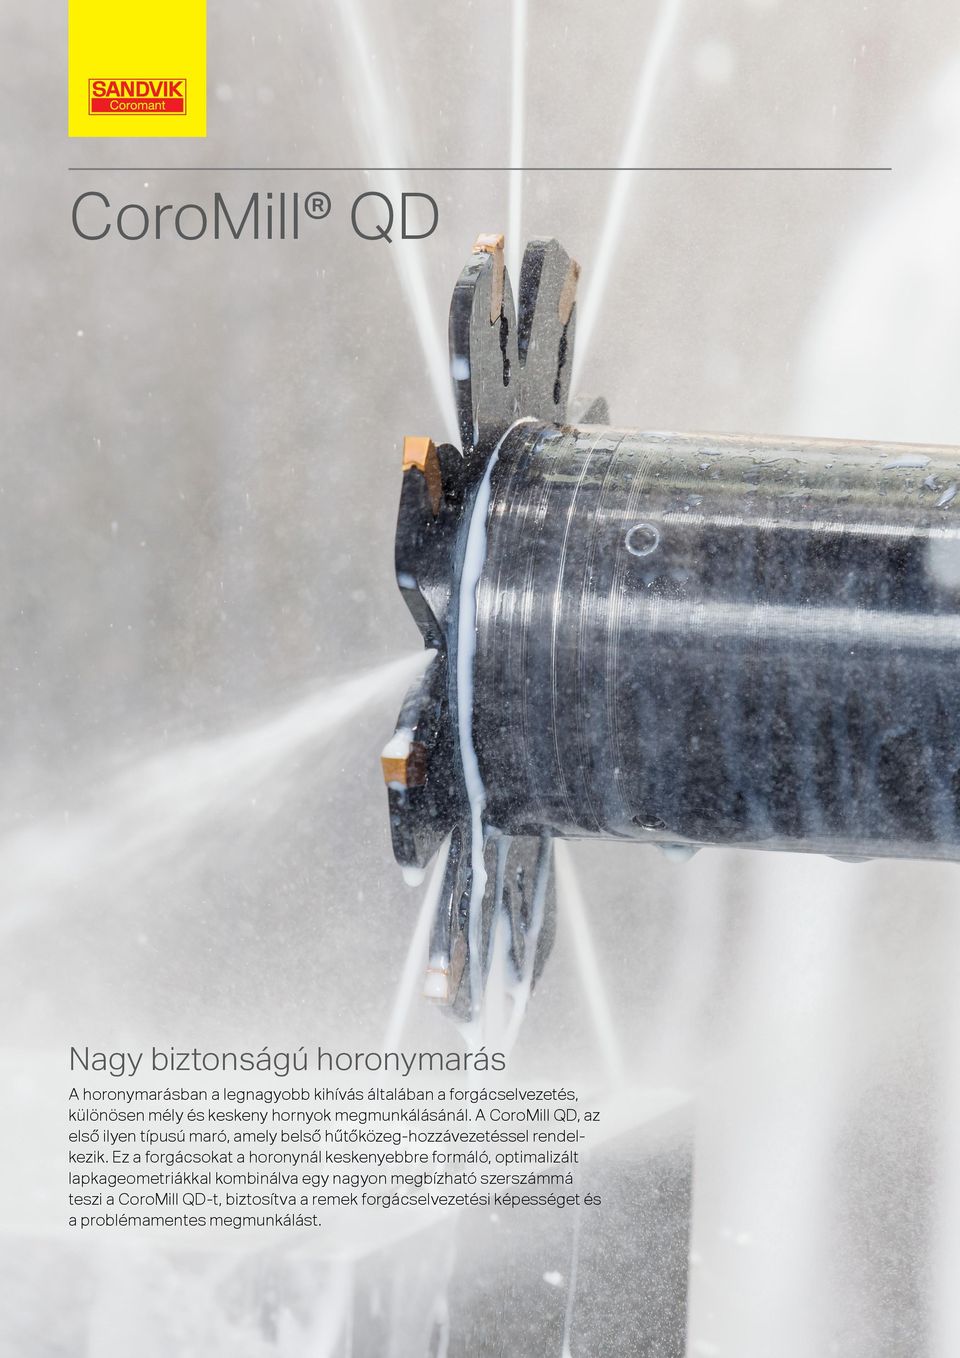 A CoroMill QD, az első ilyen típusú maró, amely belső hűtőközeg-hozzávezetéssel rendelkezik.